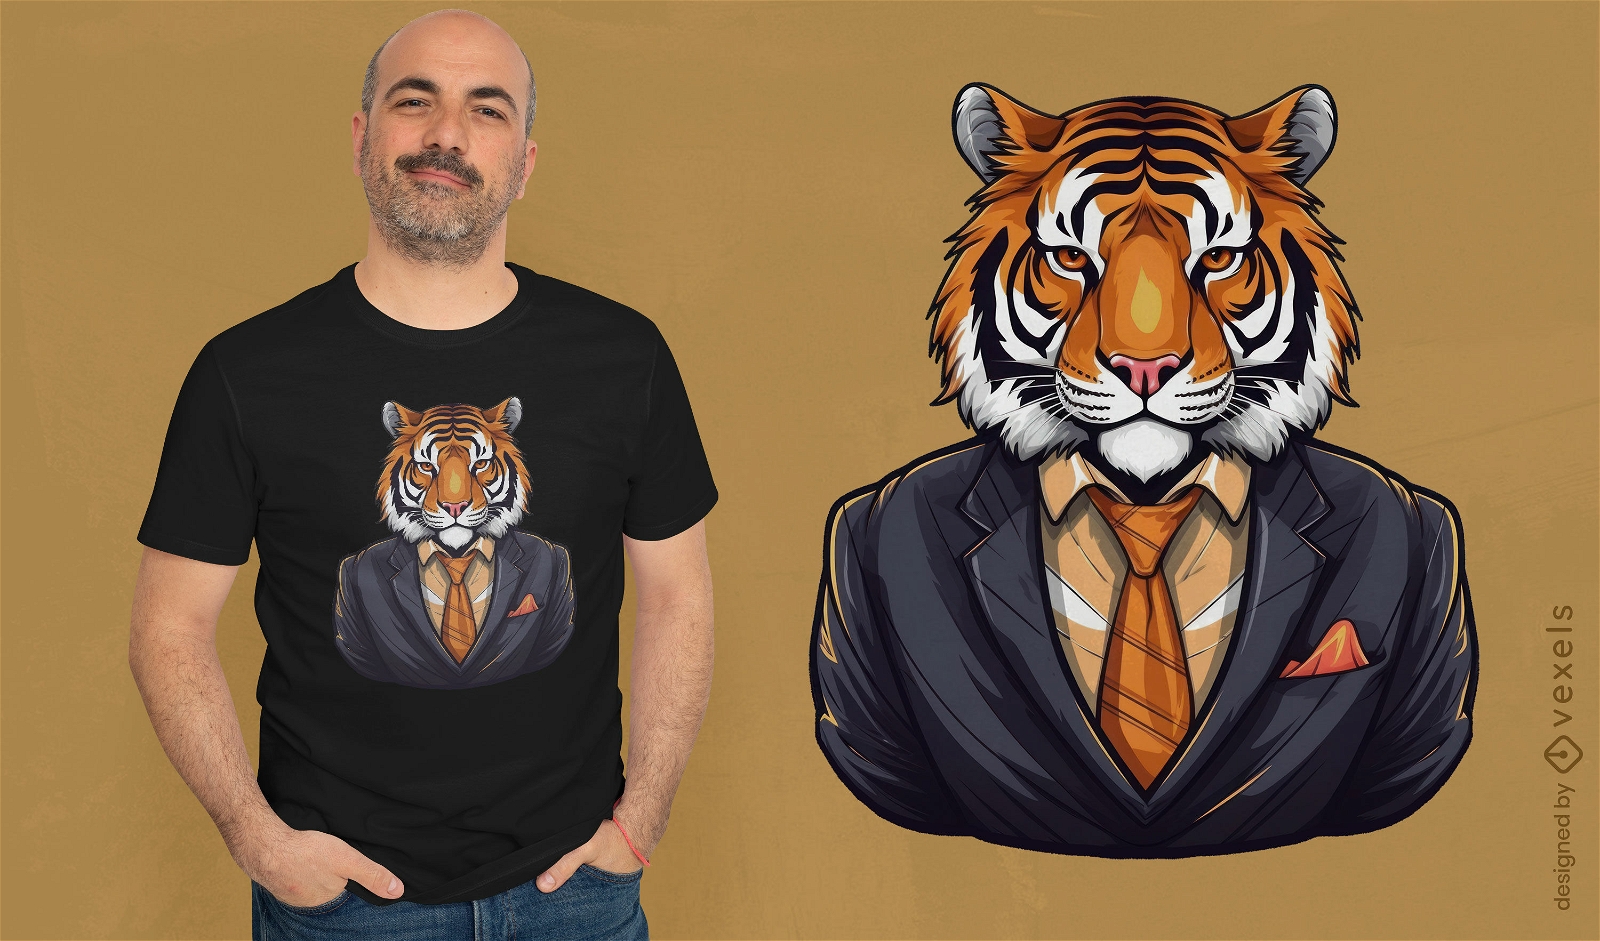 Suited tiger t-shirt design